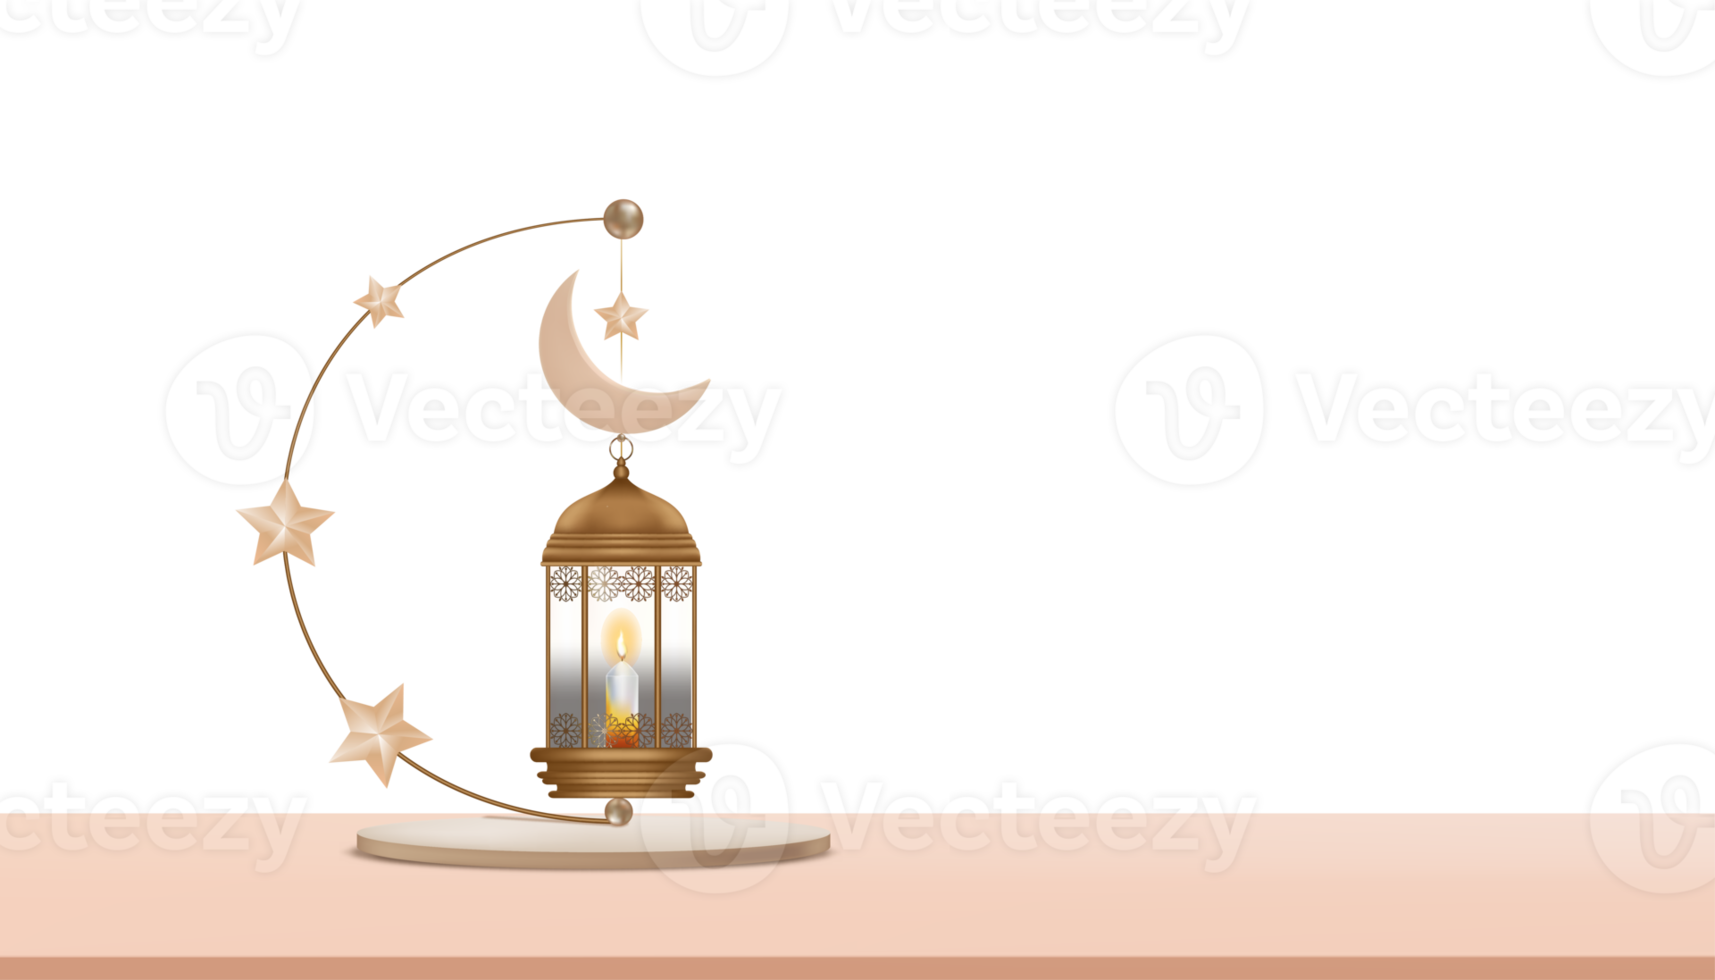 podio islámico con linterna 3d tradicional con luna creciente, colgante de estrella, telón de fondo ilustrativo de la religión musulmana simbólica, eid ul fitr, ramadan kareem, eid al adha, eid mubarak png